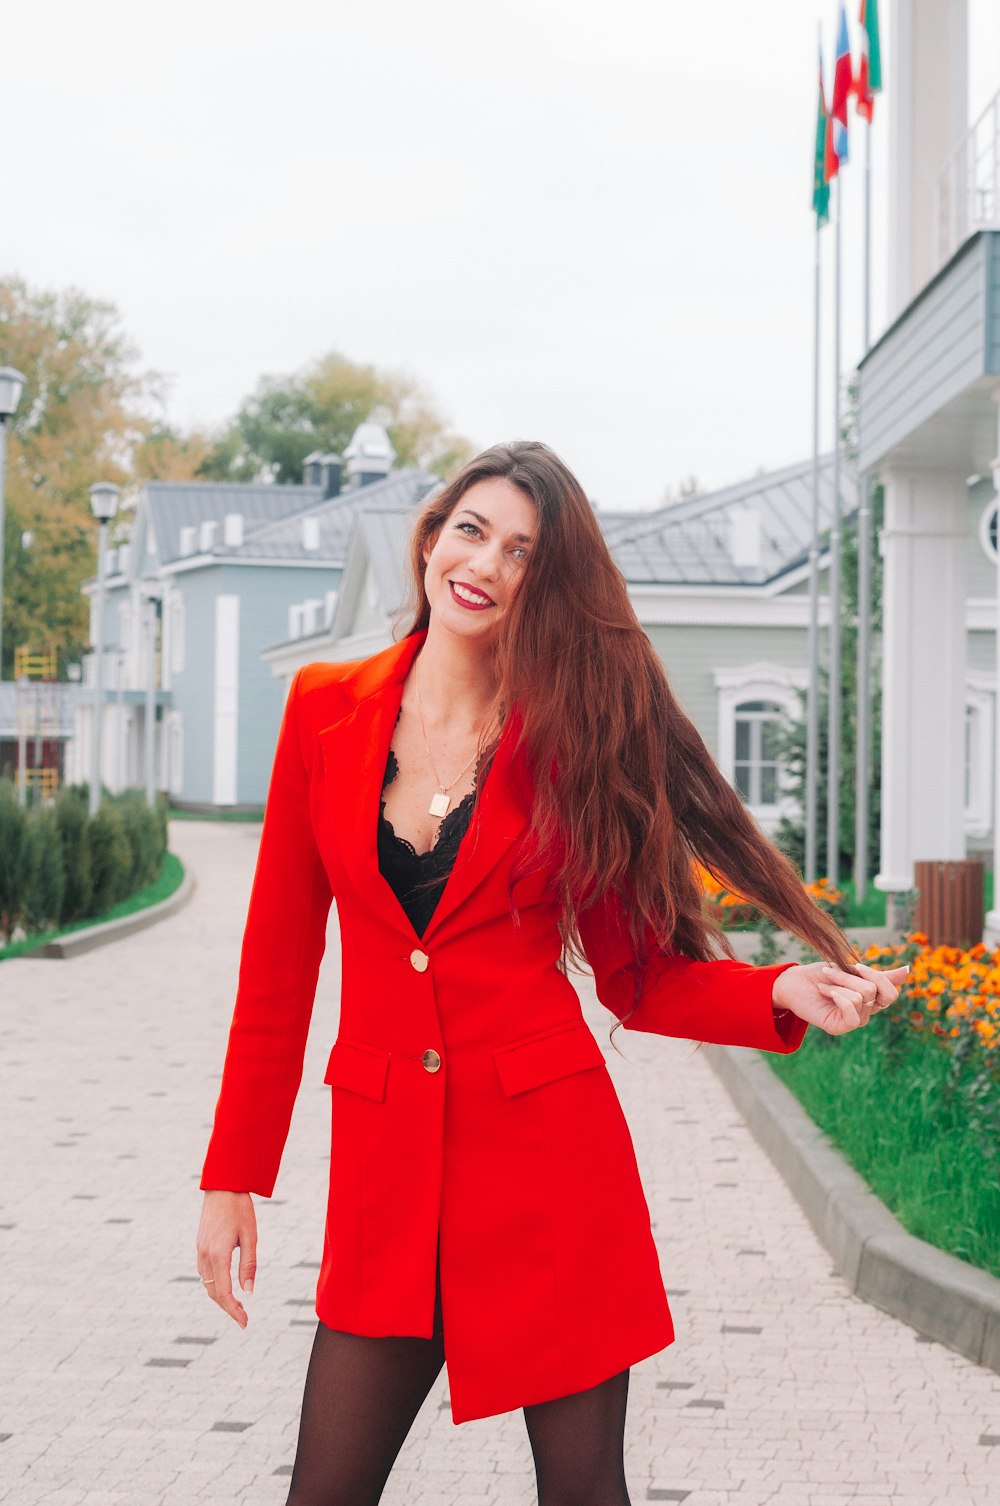 Una mujer con un abrigo rojo – Imagen Rusia gratis en Unsplash